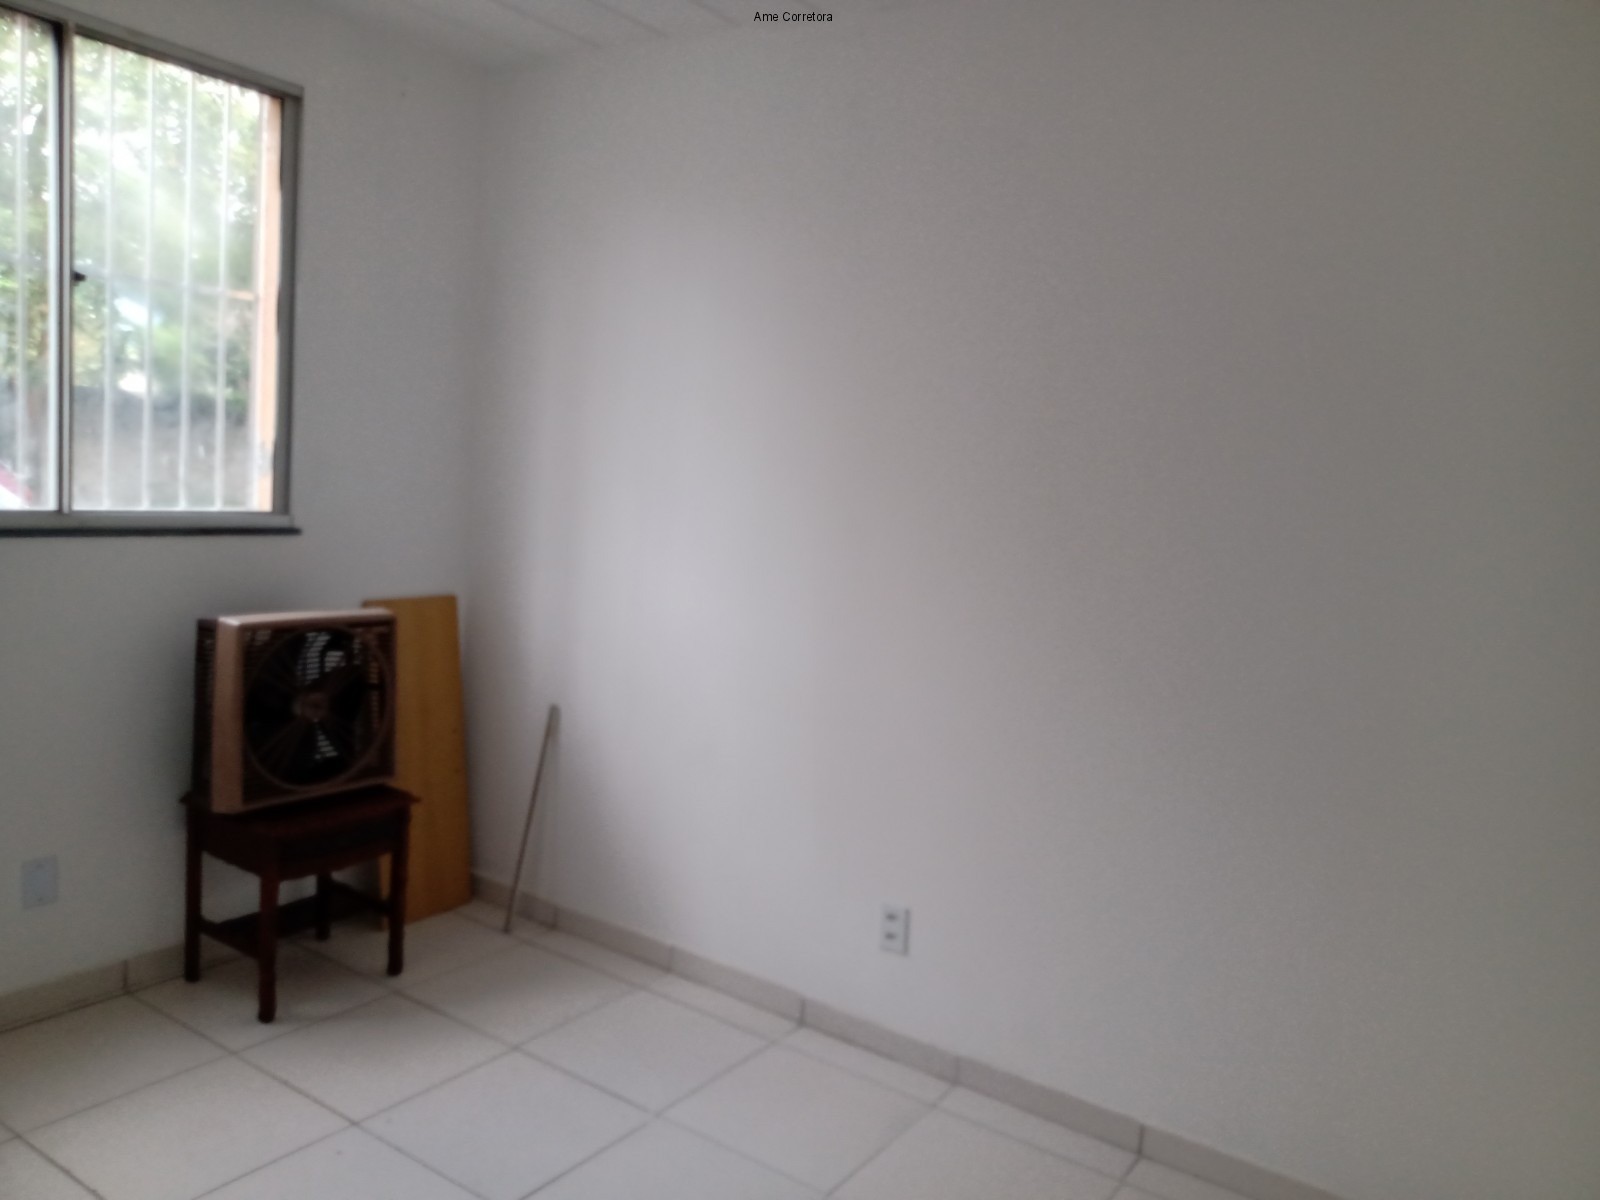 FOTO 03 - Apartamento 2 quartos à venda Rio de Janeiro,RJ - R$ 140.000 - AP00361 - 4